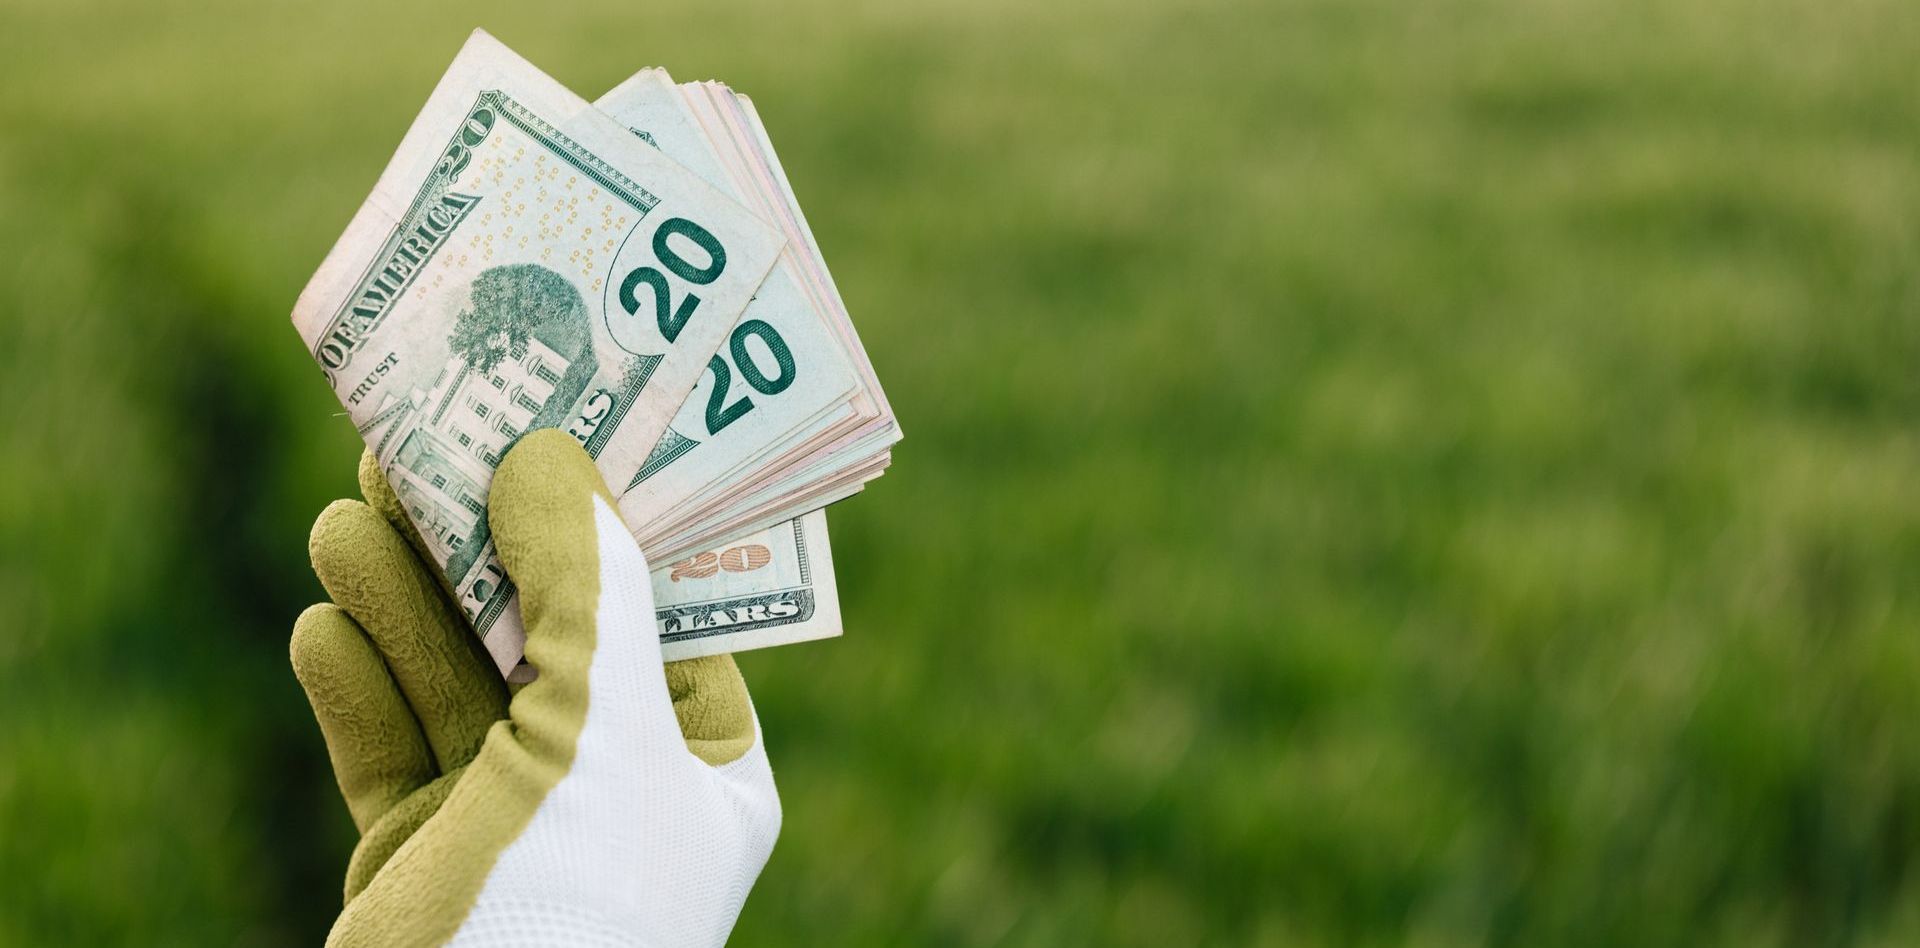 Green money cash in glove hand